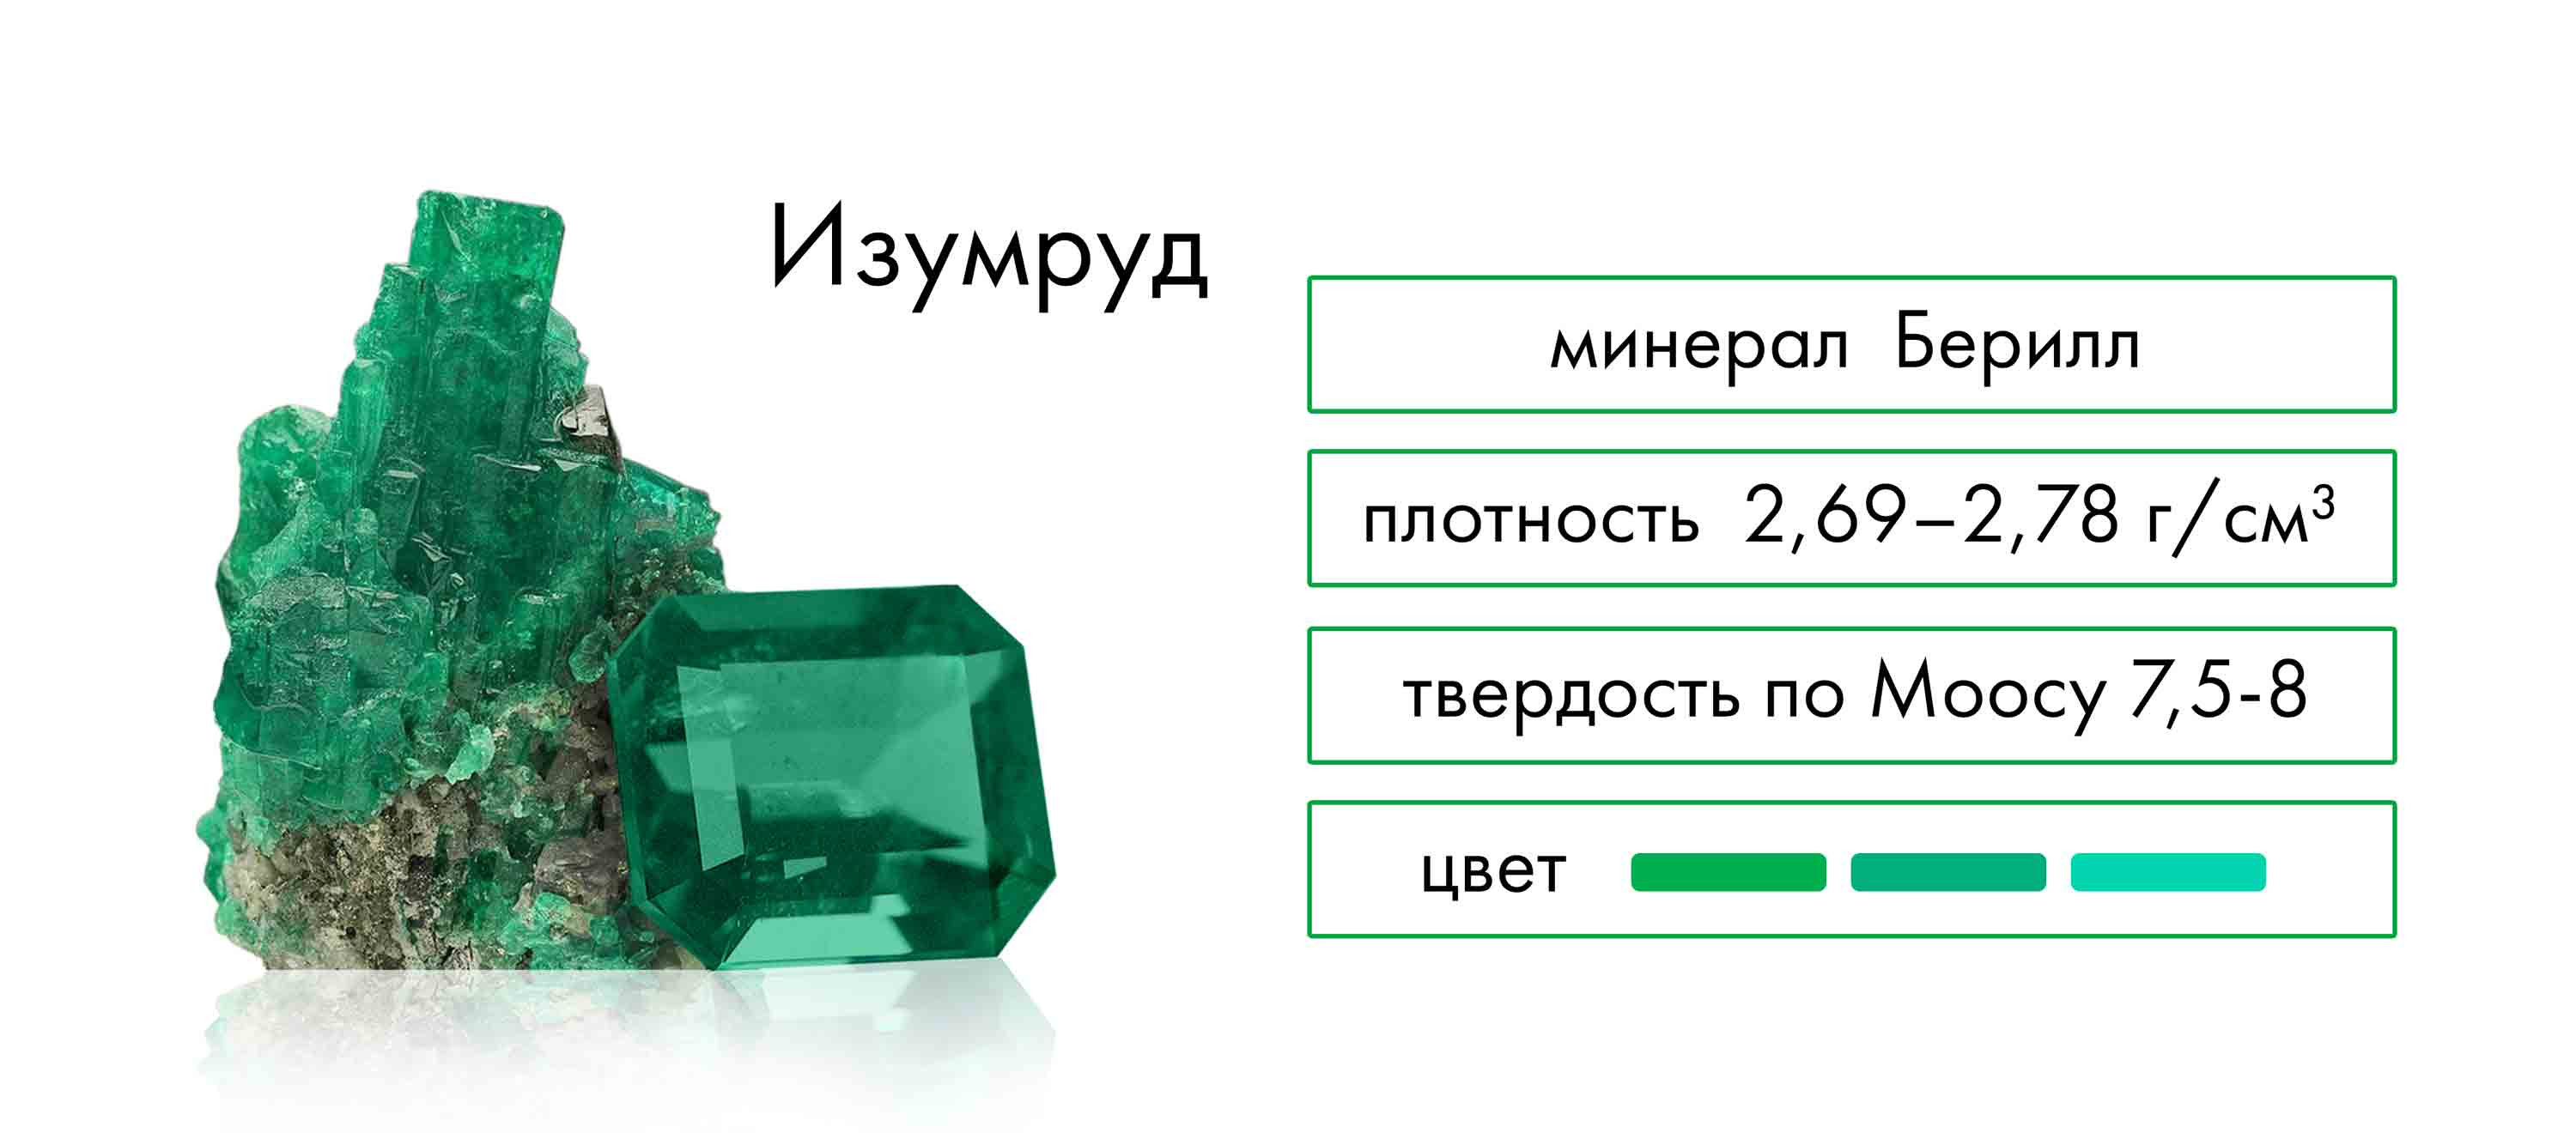 Изумруд это зеленый драгоценный камень, из группы бериллов